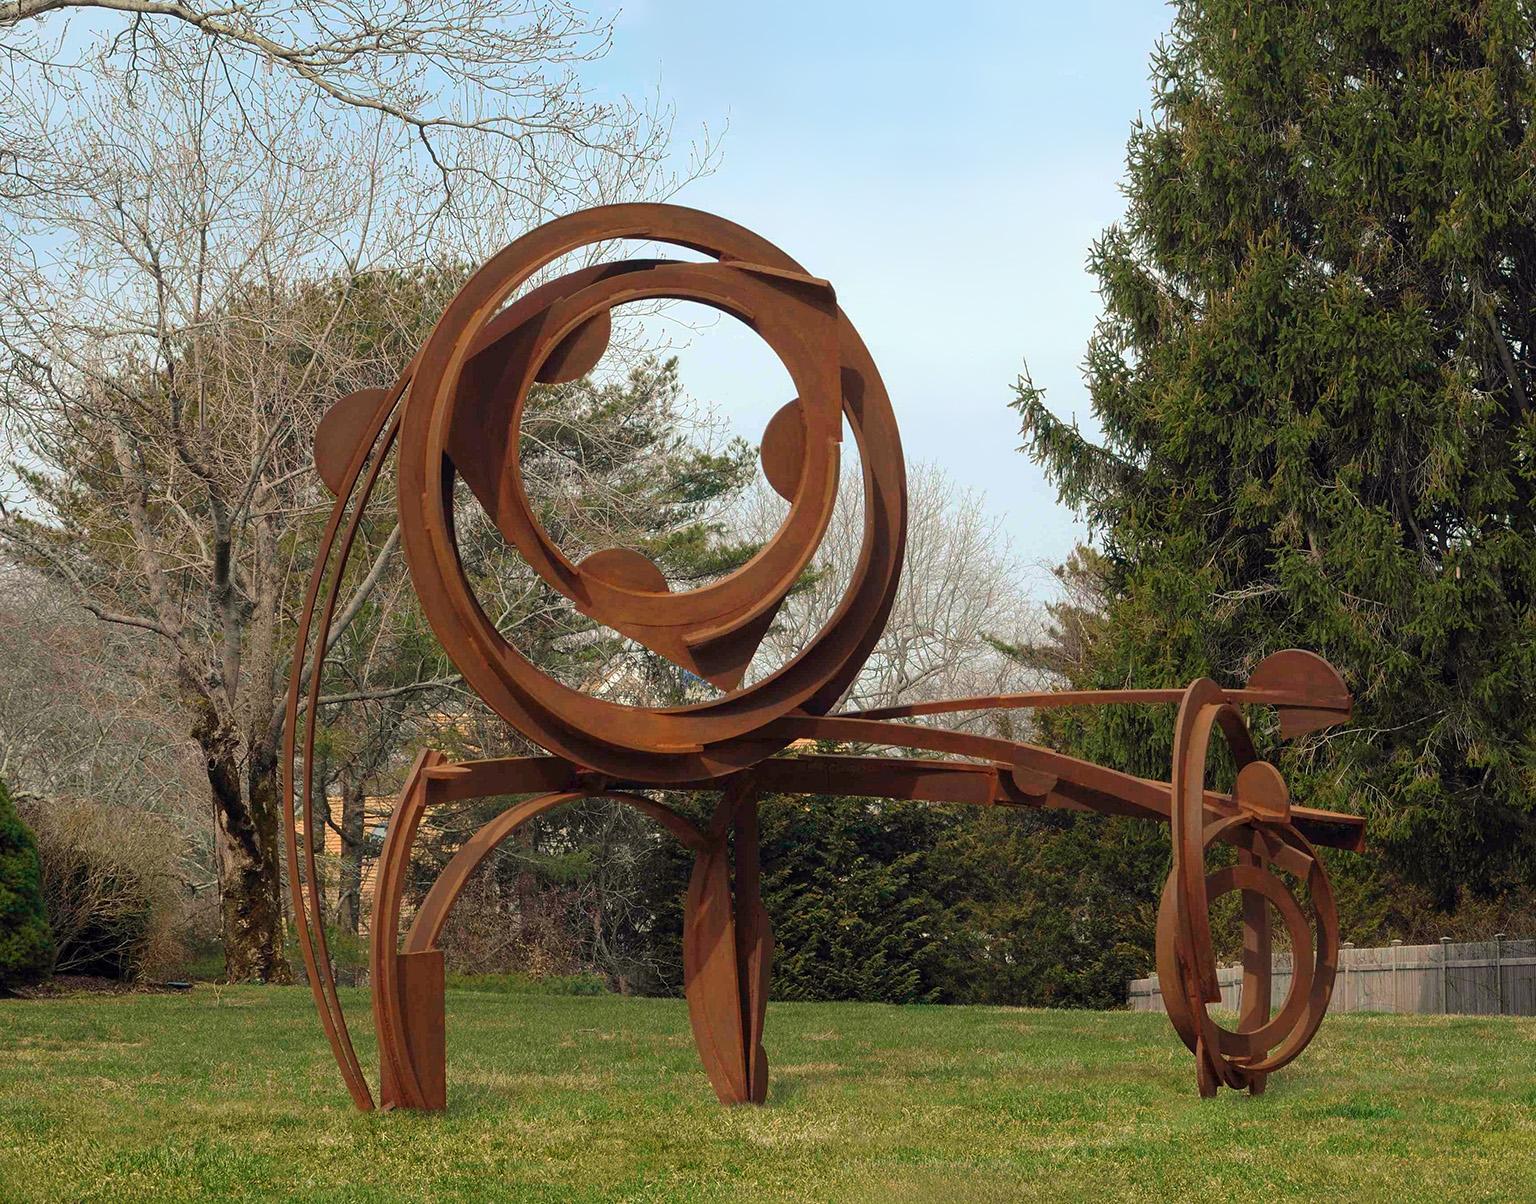 Joel Perlman Abstract Sculpture - "Wide Wheel" Abstract, Industrial Steel Metal Outdoor Sculpture